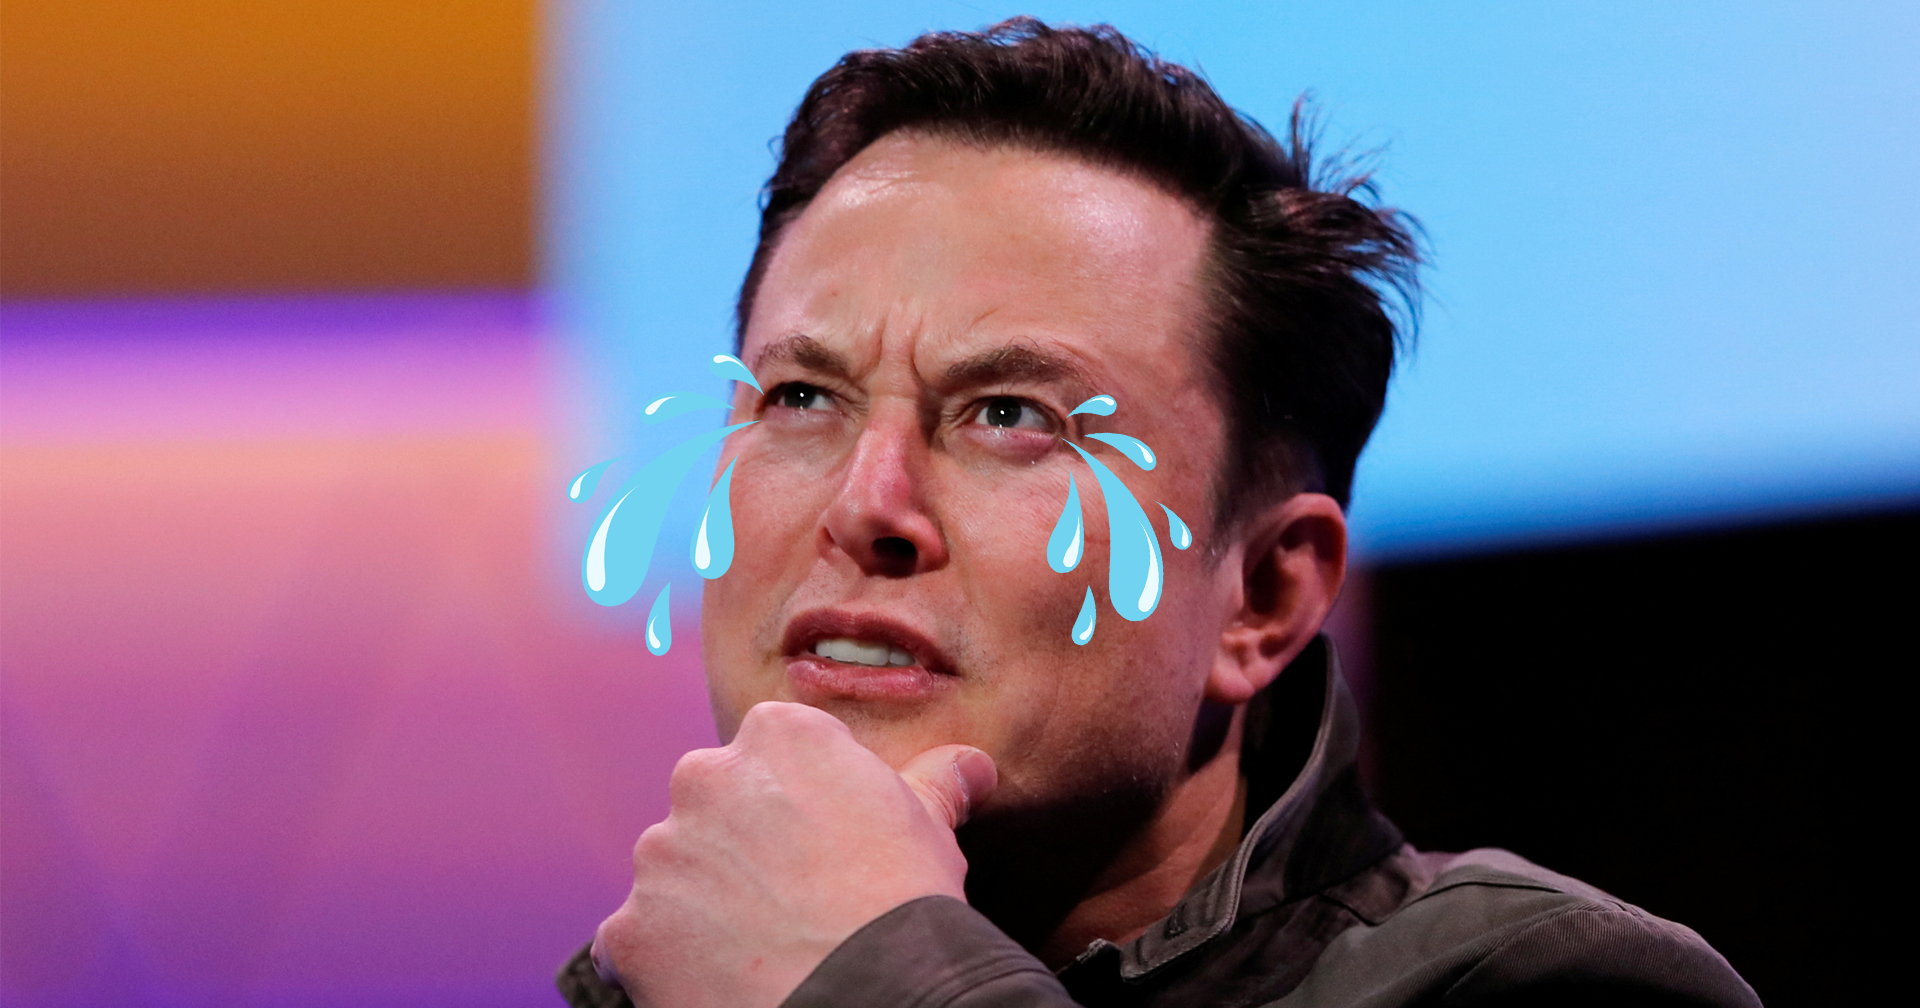 ทำเอง กู้เอง Elon Musk โหมงาน 120 ชม. ต่อสัปดาห์หลังเข้าคุม Twitter – แถมปวดหลังด้วย